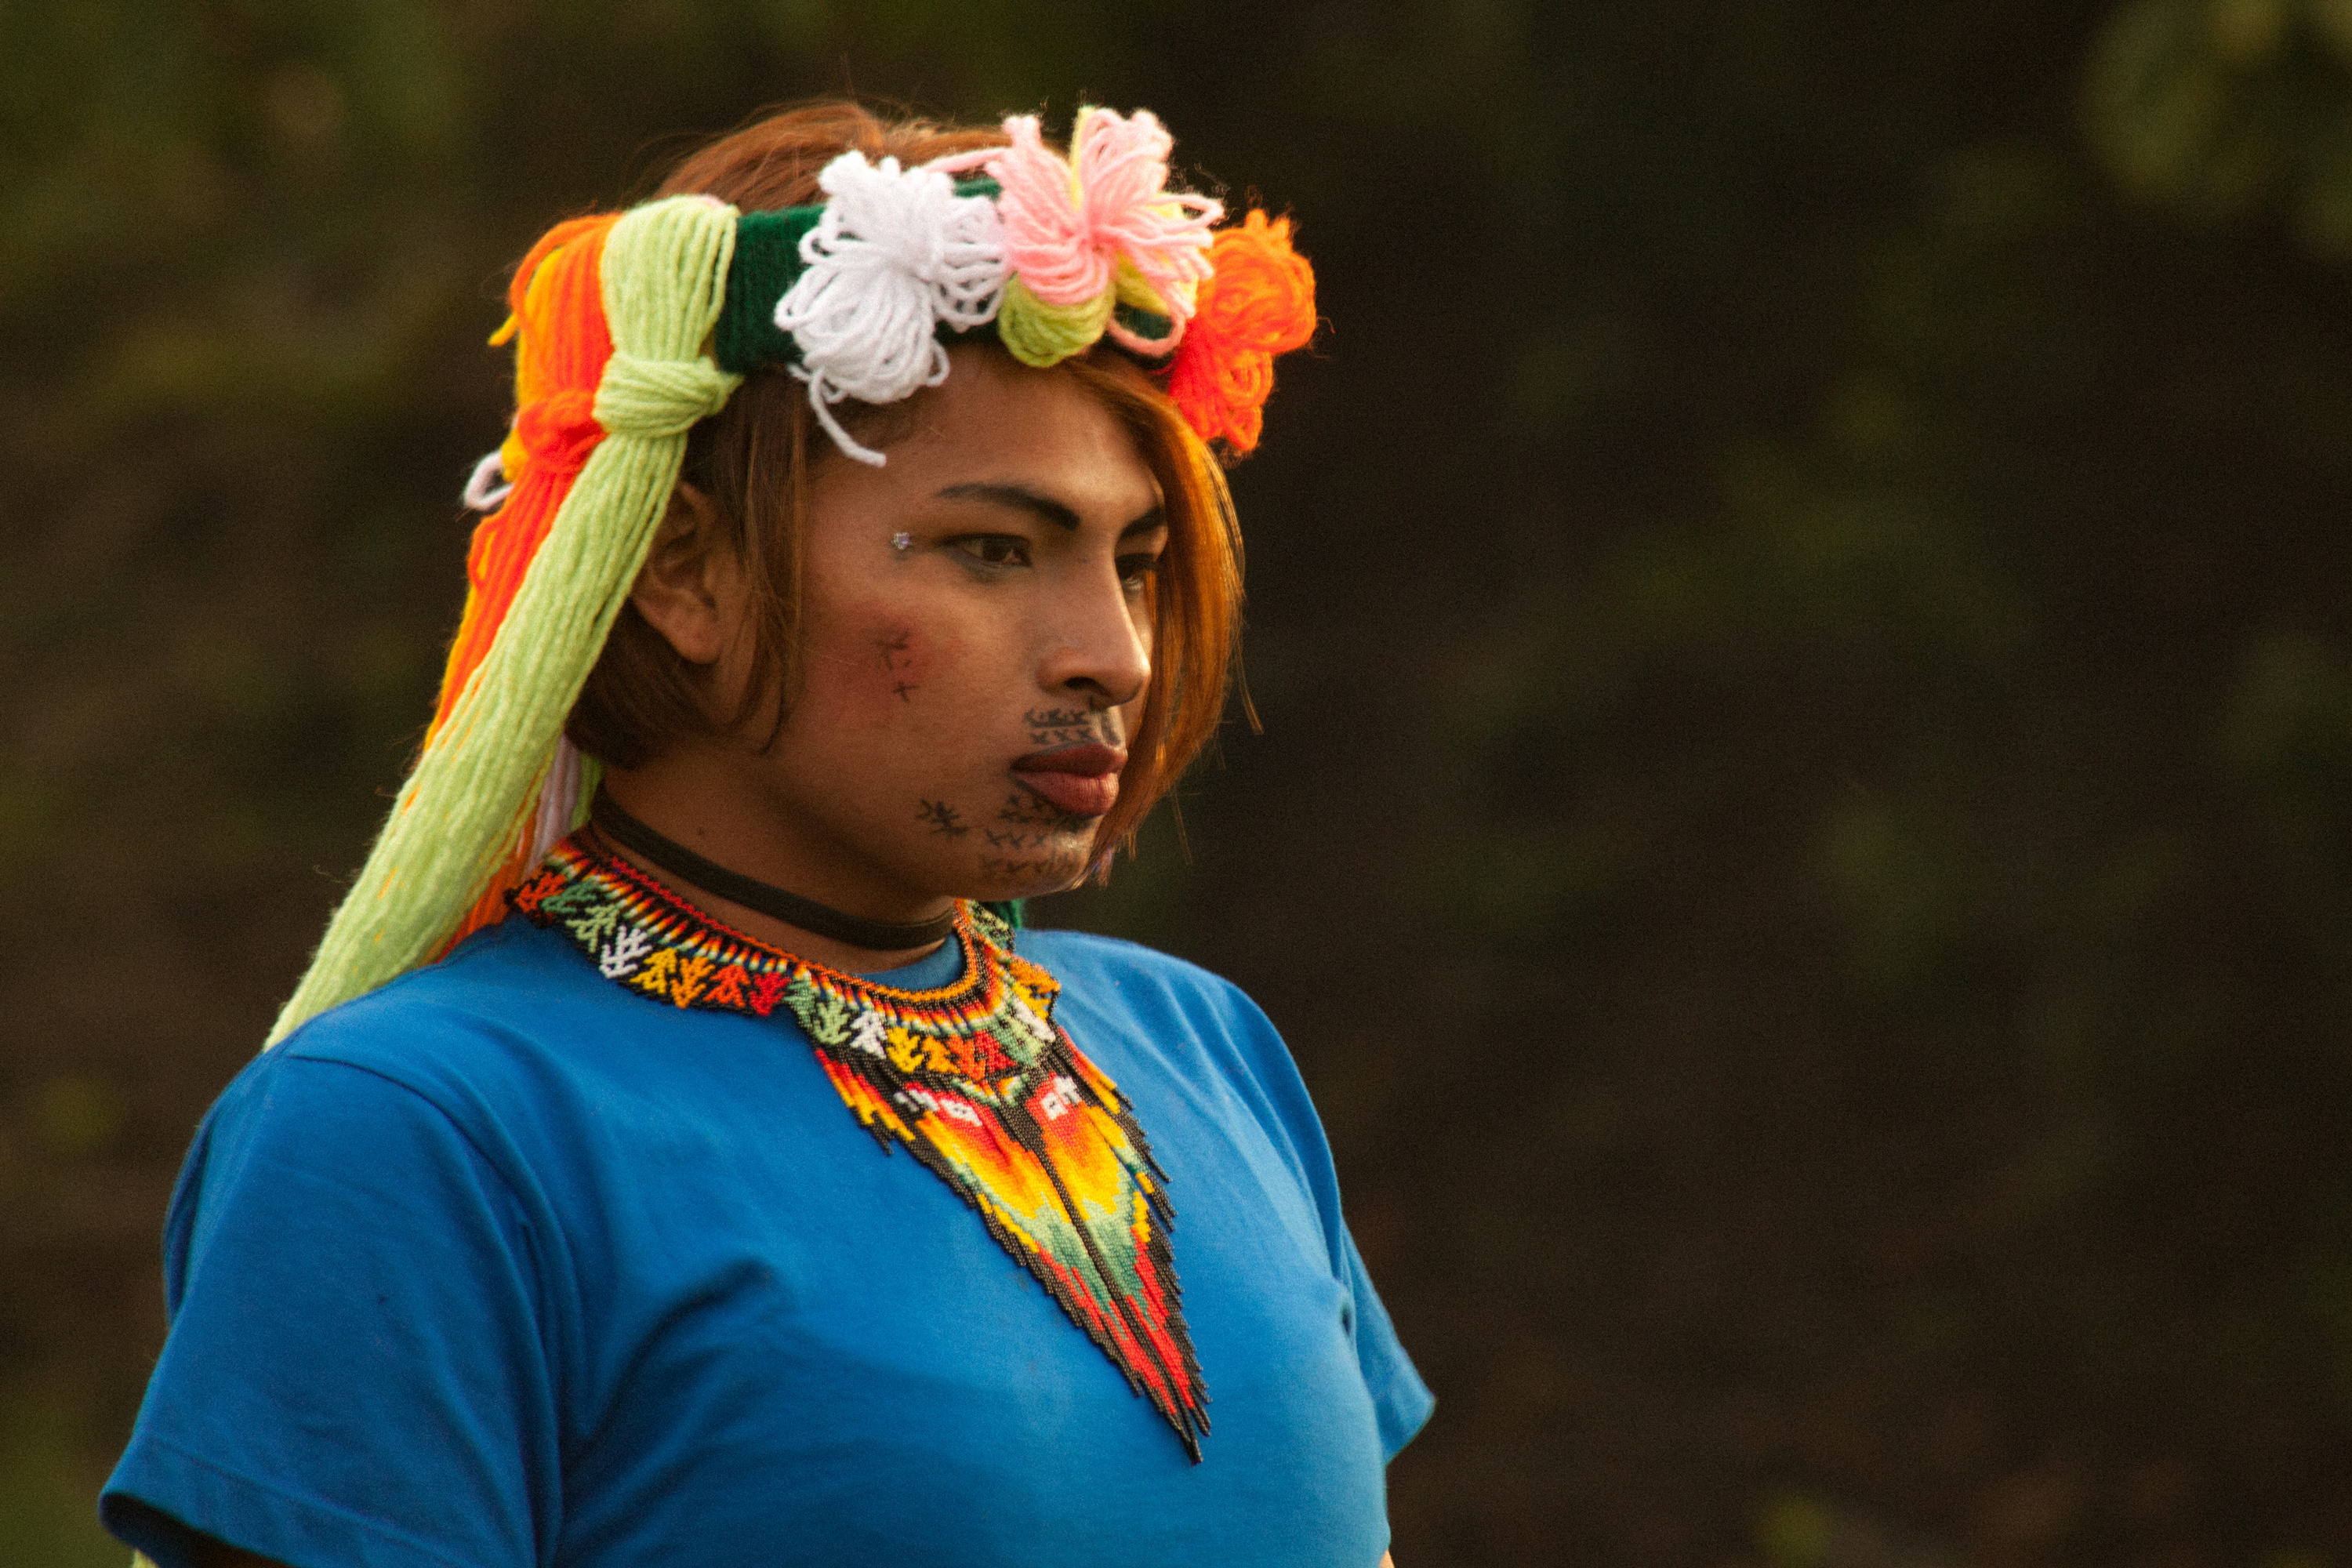 Imagen noticia 'Aribada', es una película que sigue a mujeres trans emberá